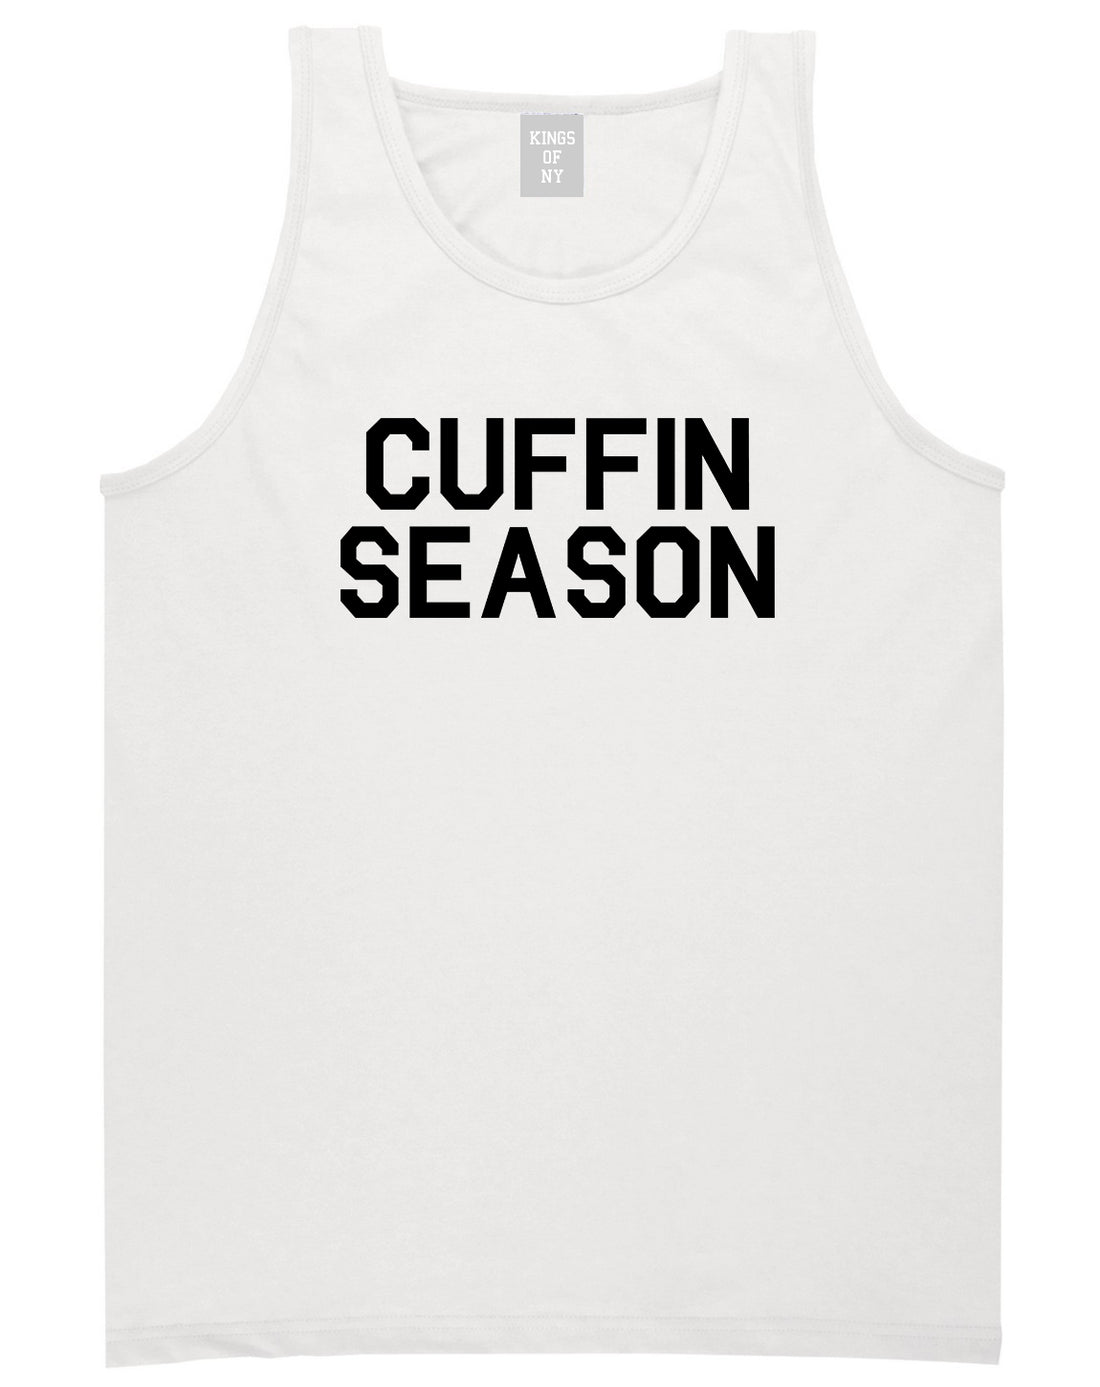 Cuffin Season Mens Tank Top Shirt White